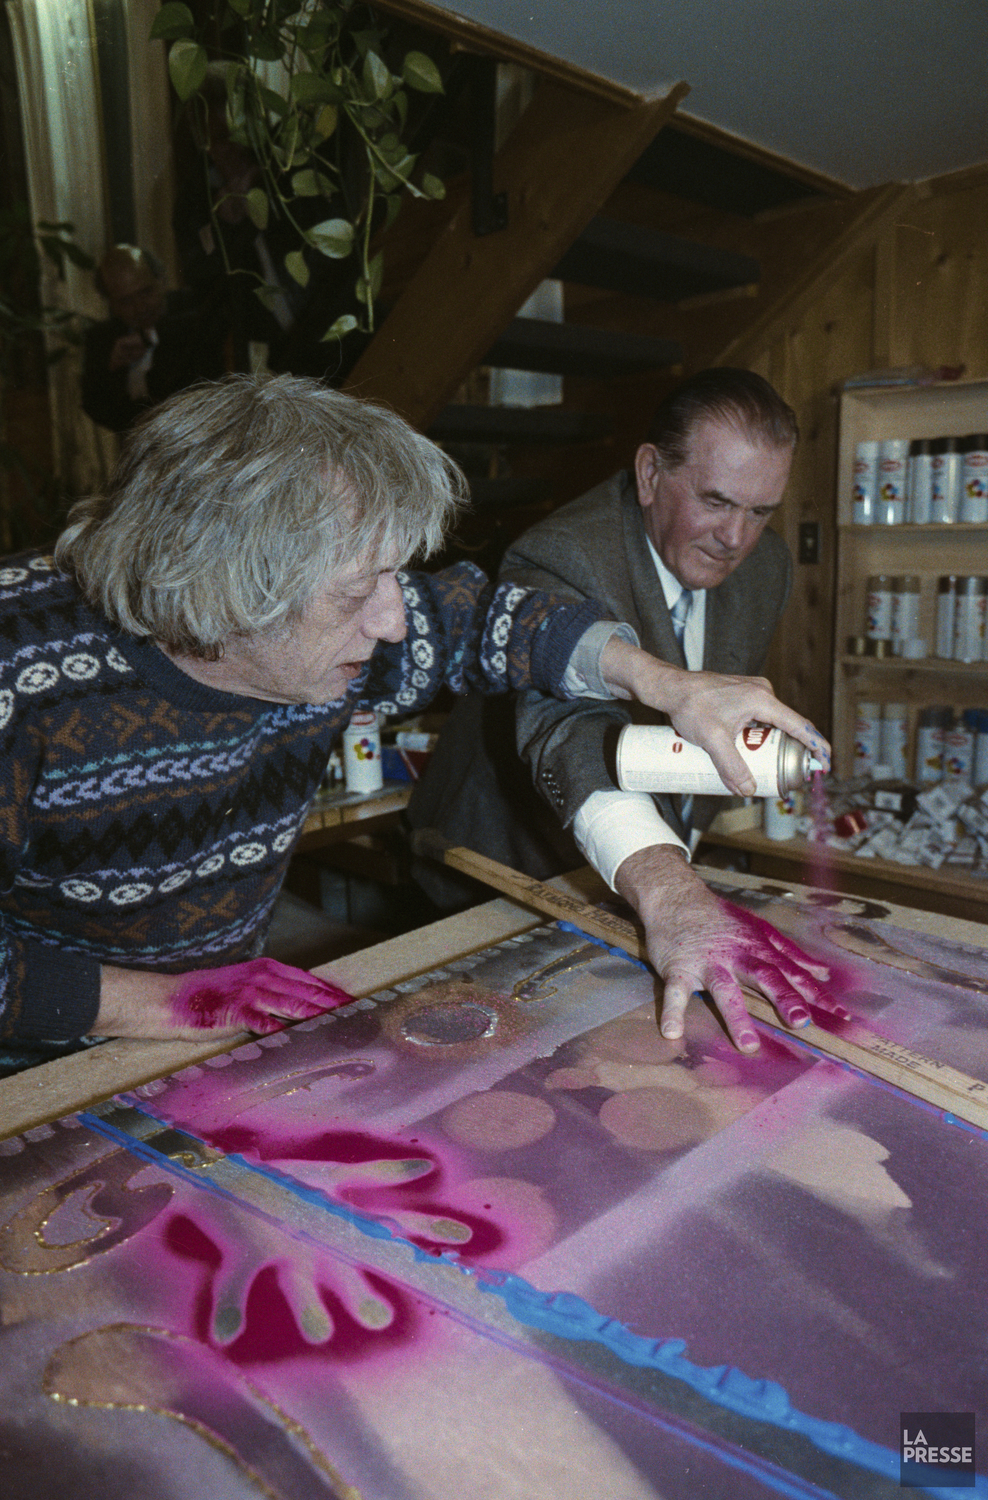 Le peintre Jean Paul Riopelle applique une peinture rouge sur la main de Maurice Richard